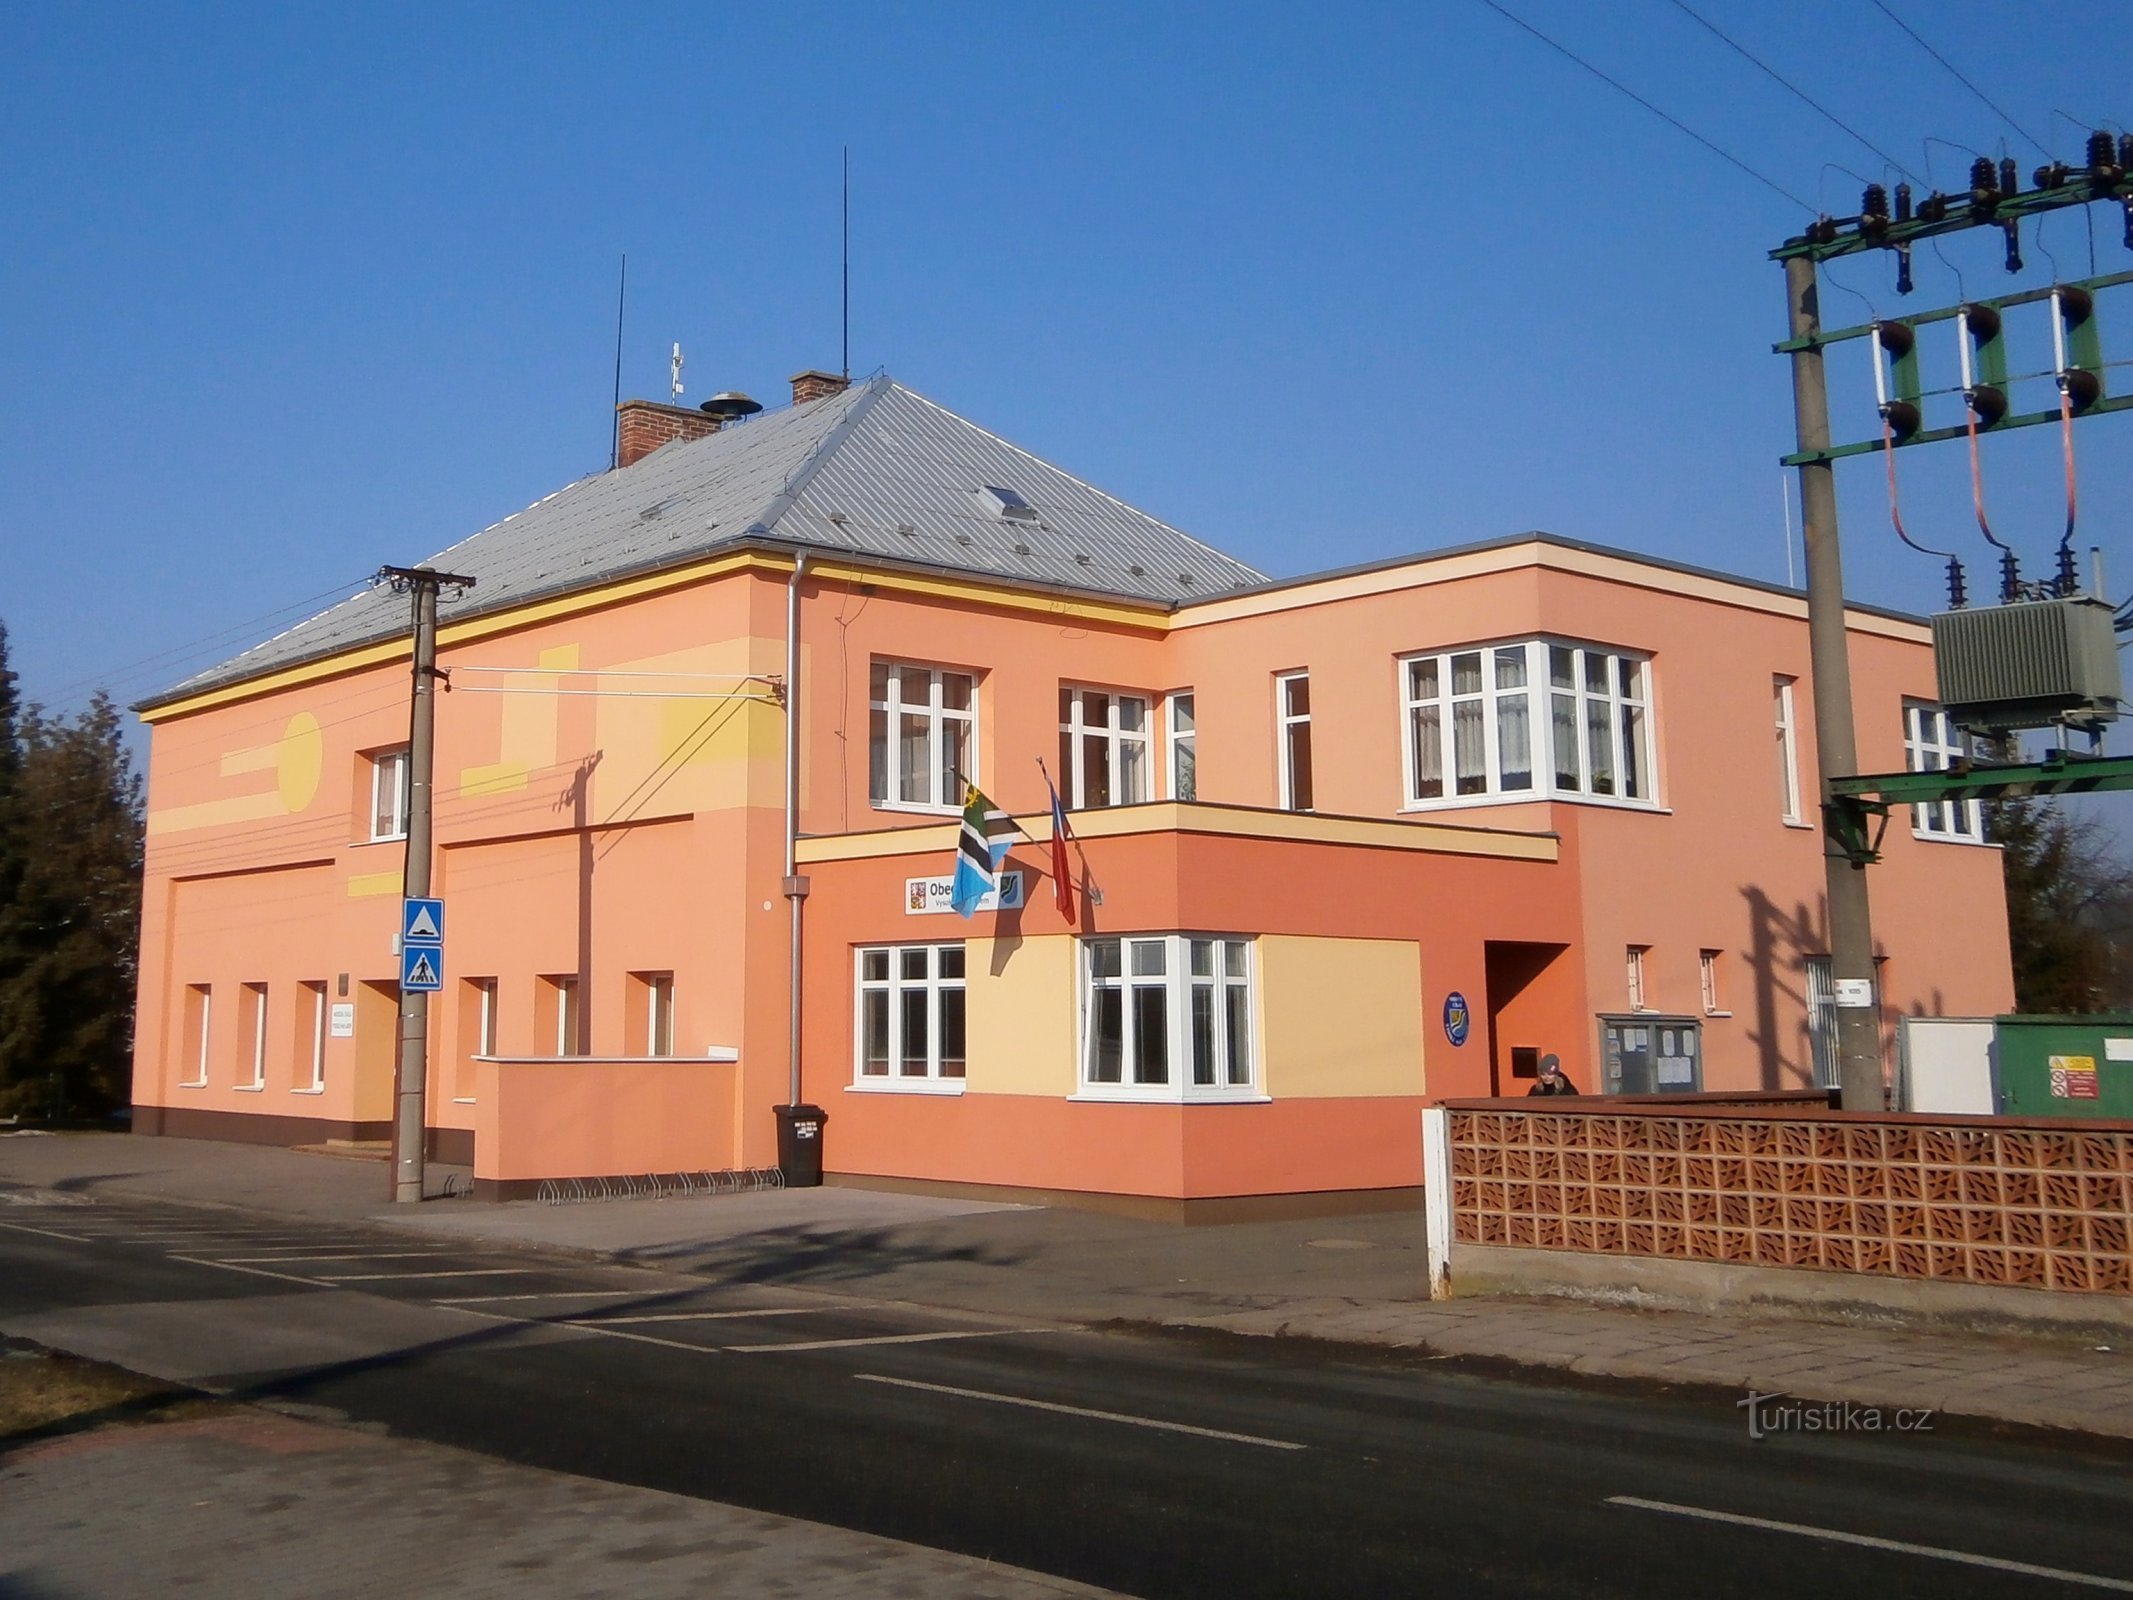 Grădinița și biroul municipal (Vysoká nad Labem)